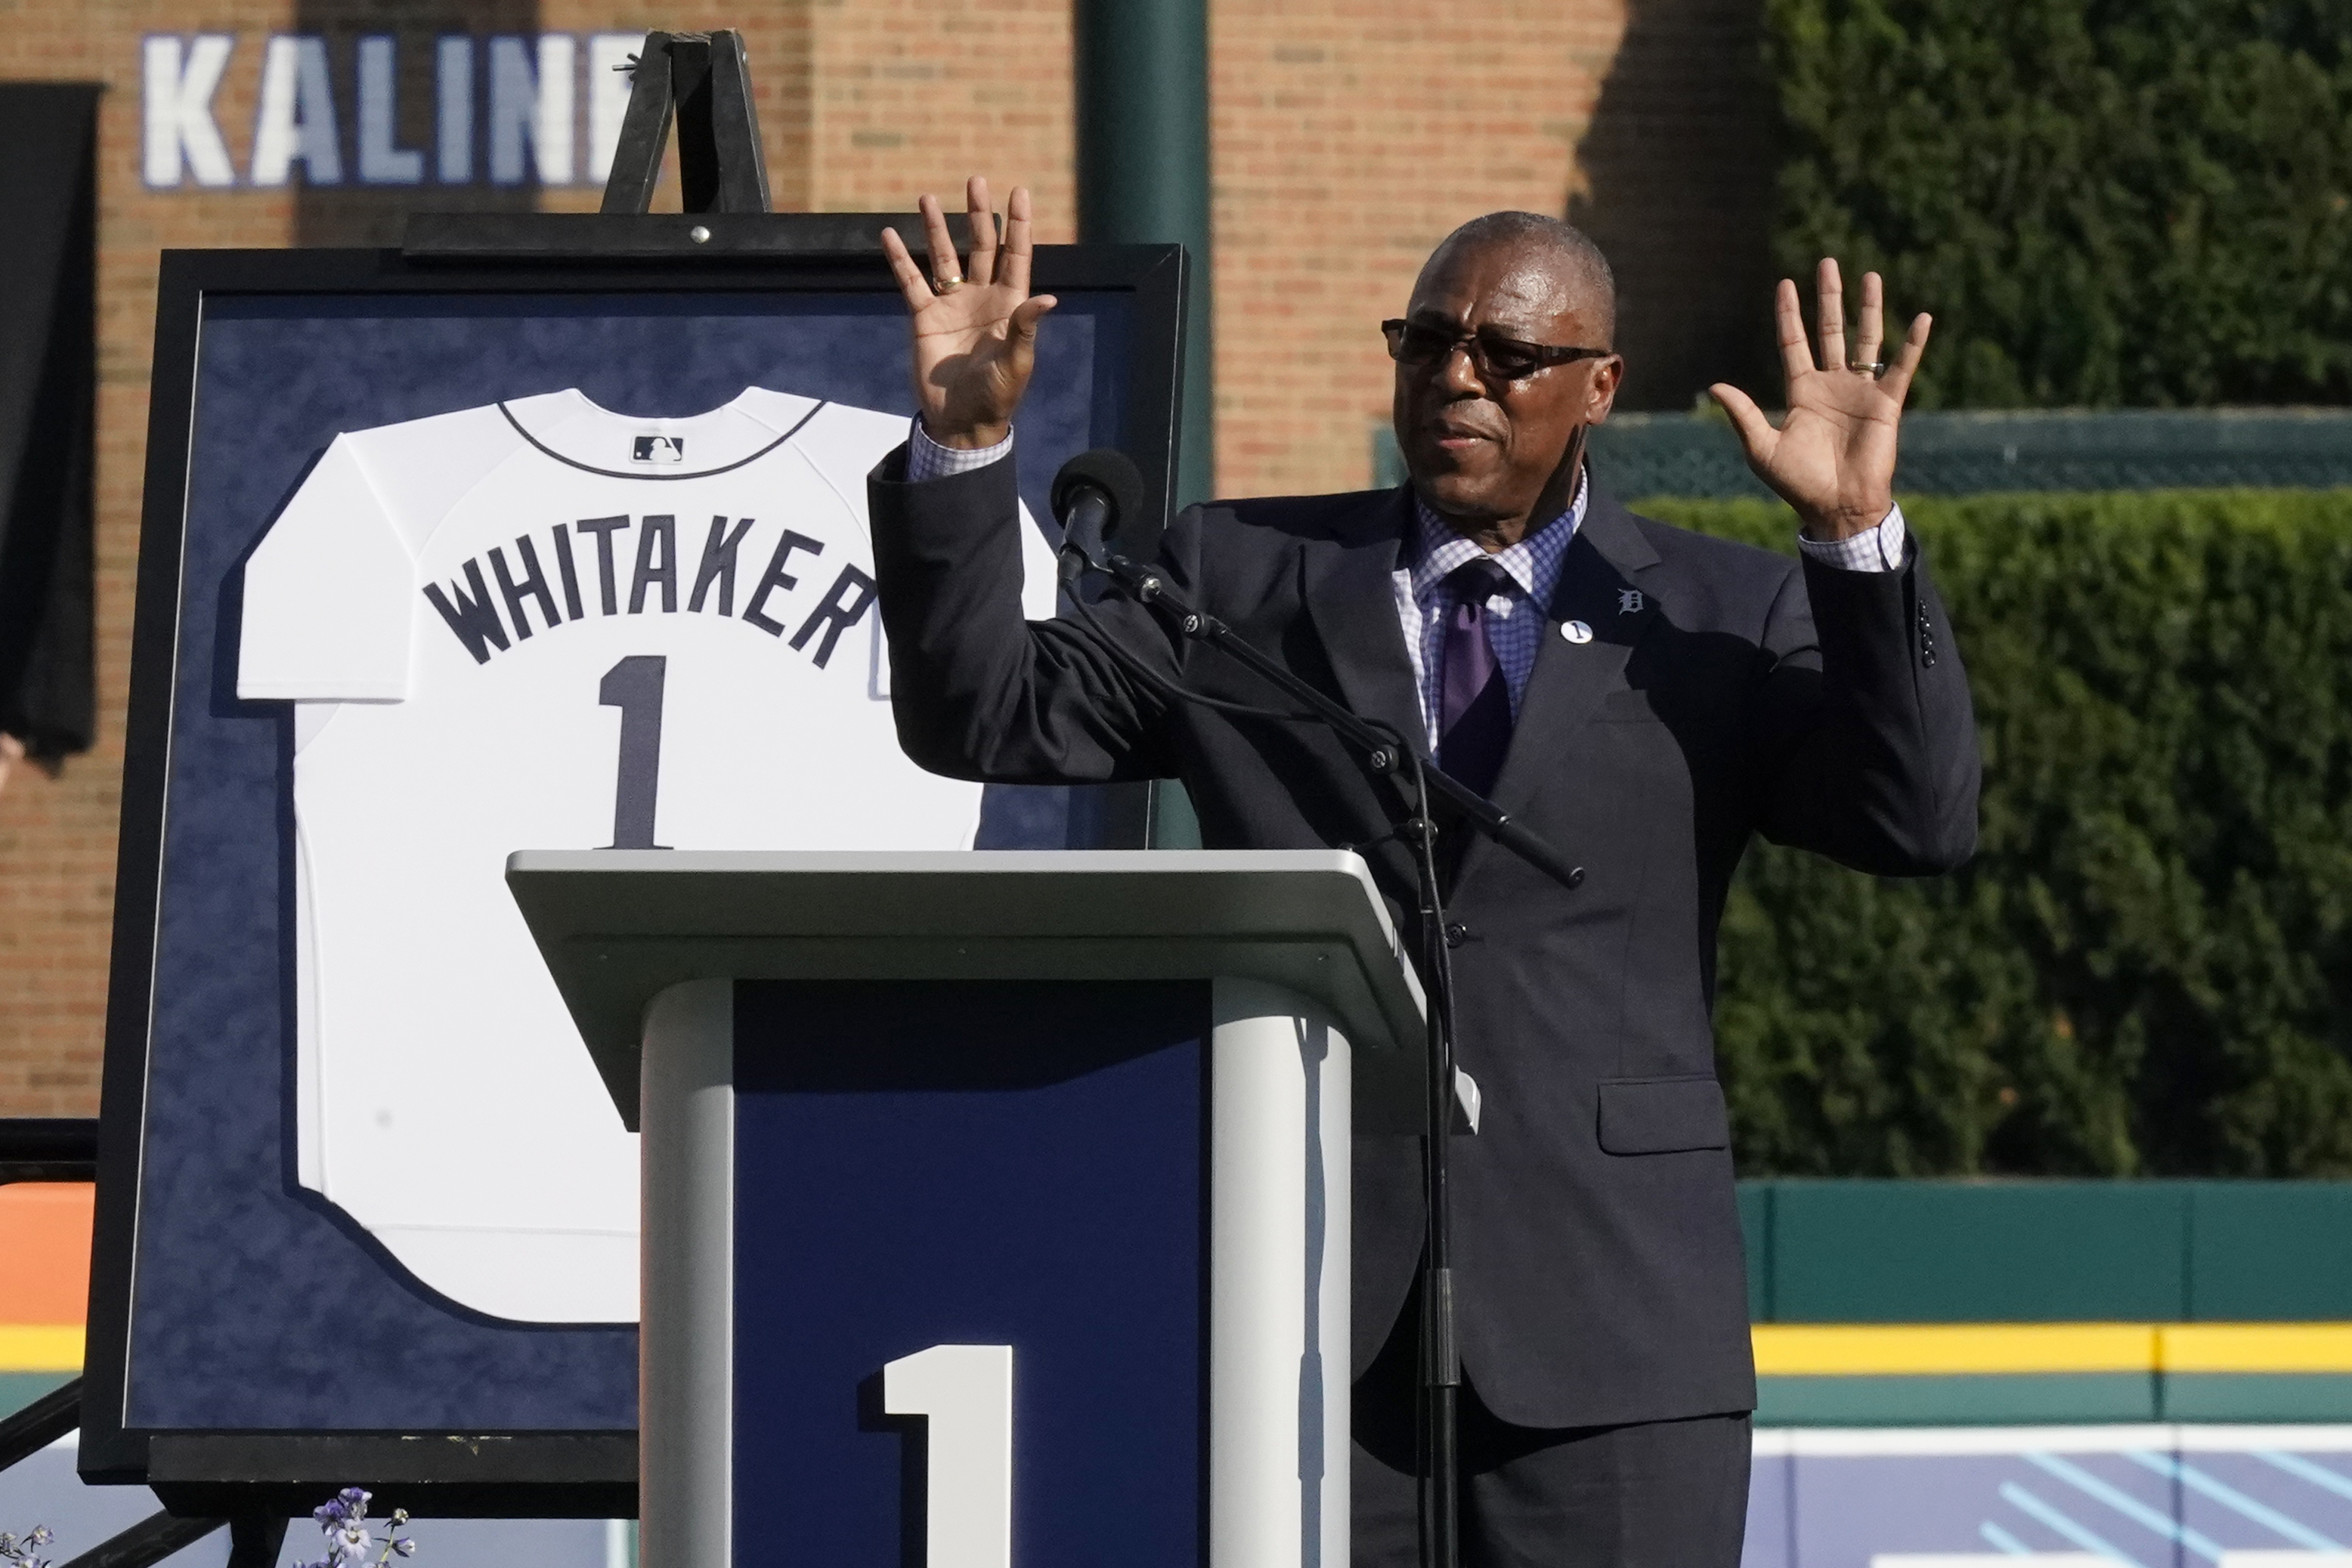 POLL: Lou Whitaker and the Hall of Fame » Baseball-Reference Blog